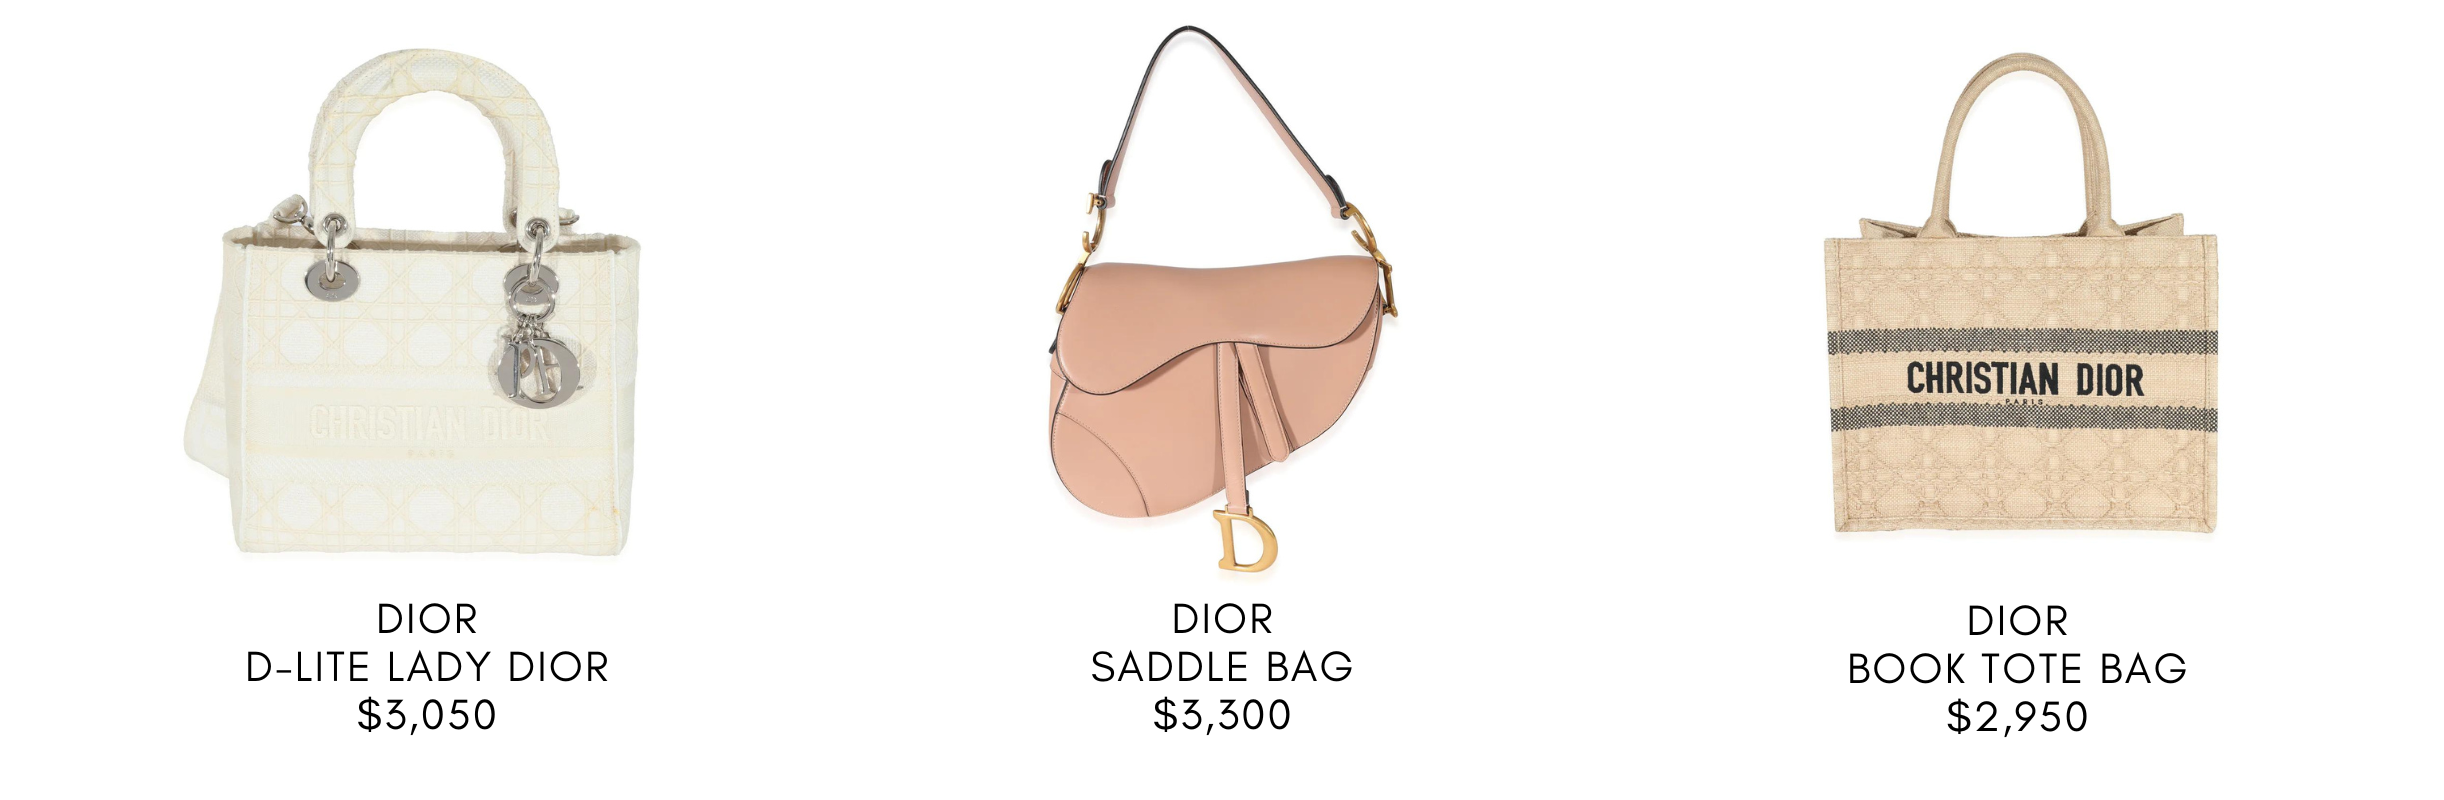 Buy Dior bag